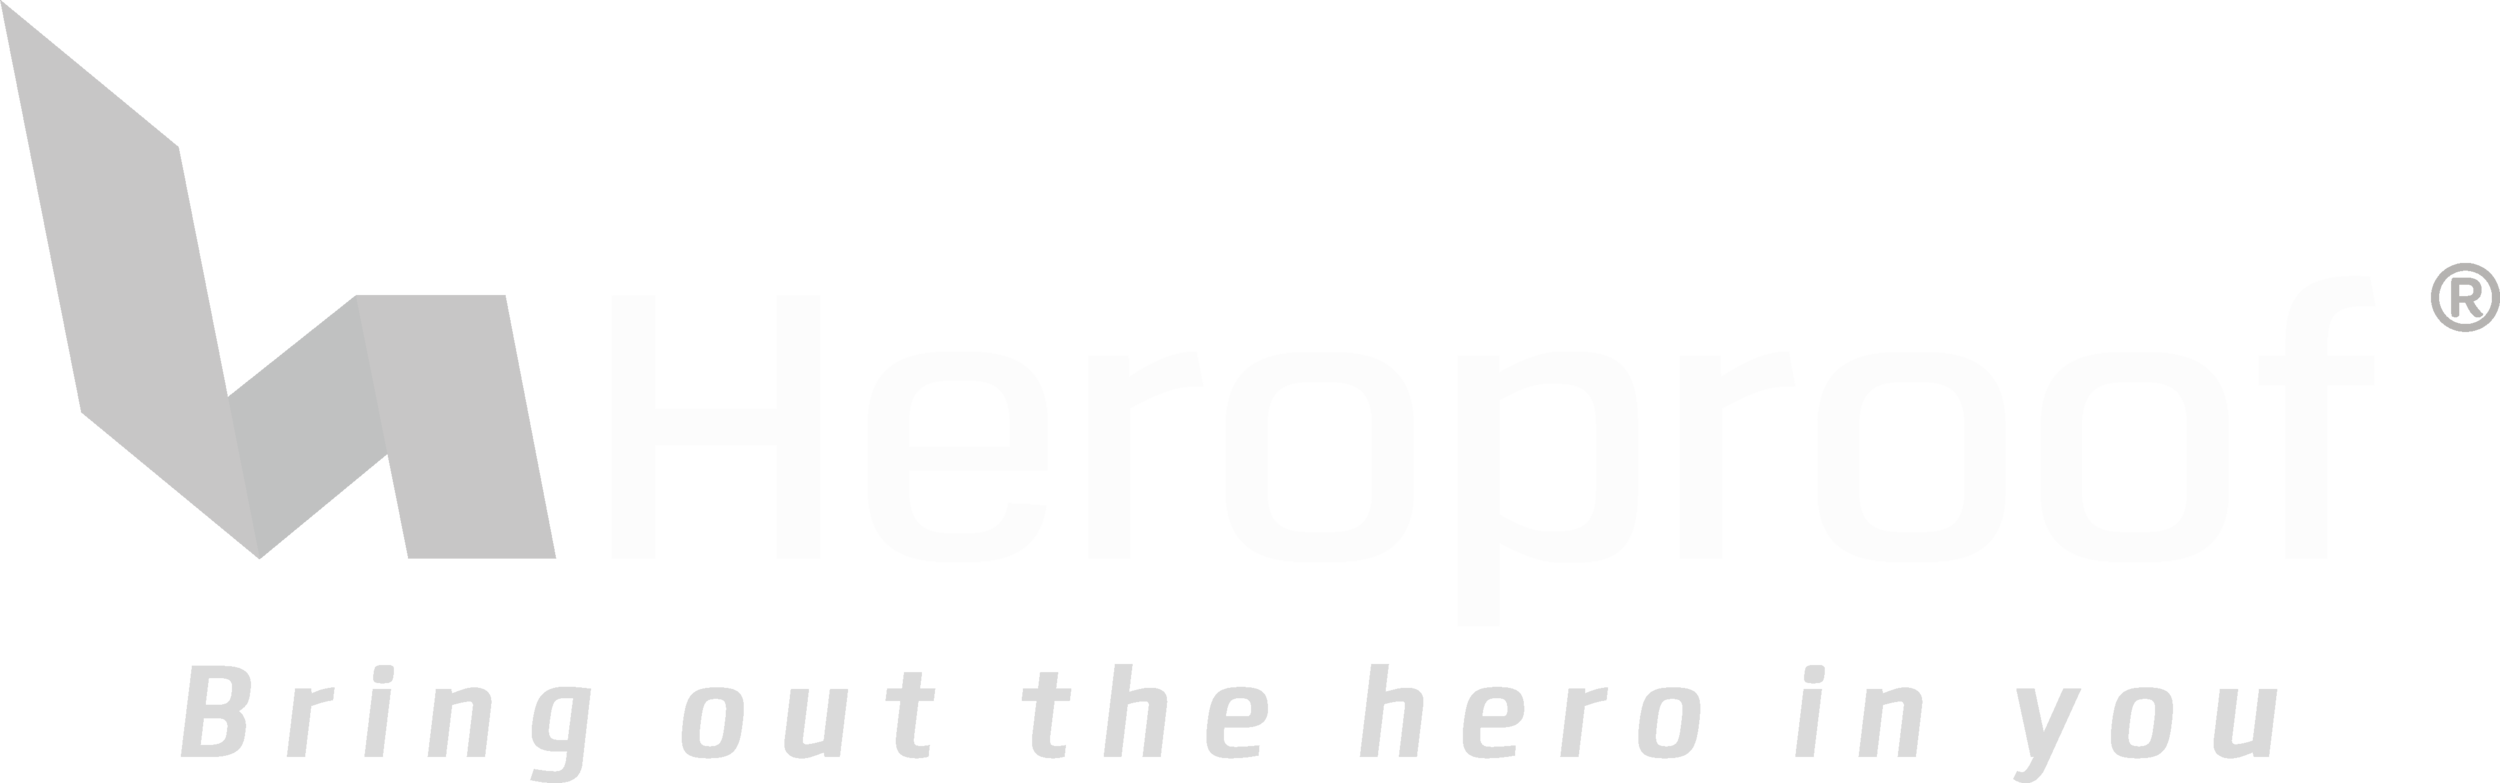 Herooproof horizontal (R) - BOTHIY.png